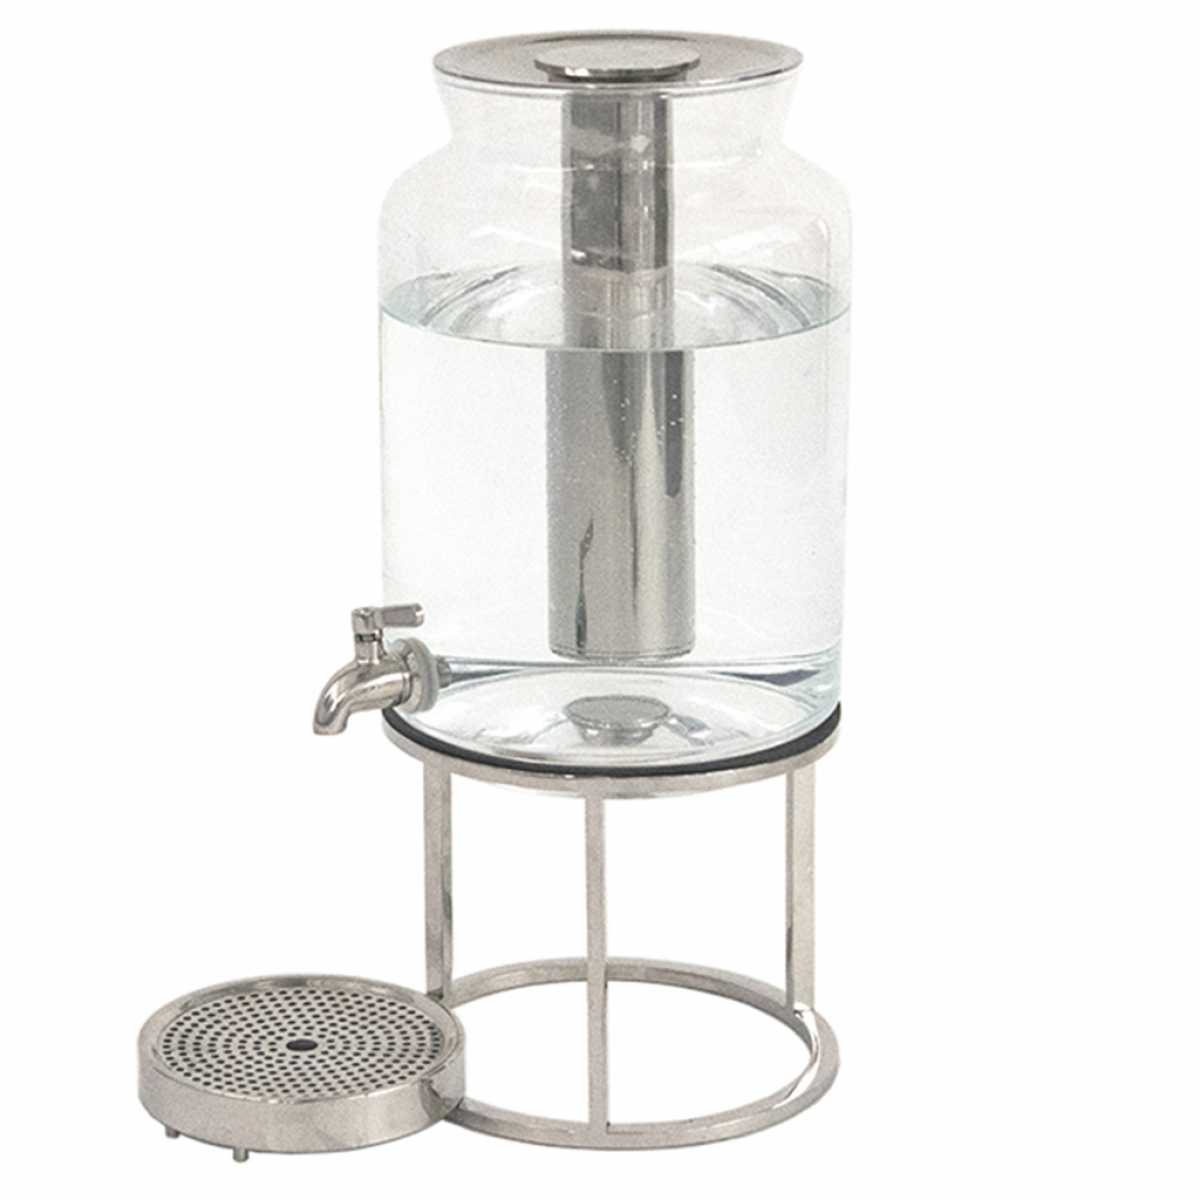 CRASTER Tilt Juice Dispenser Set Glass jar with PCM Cooling (Tilt Riser sold separately)